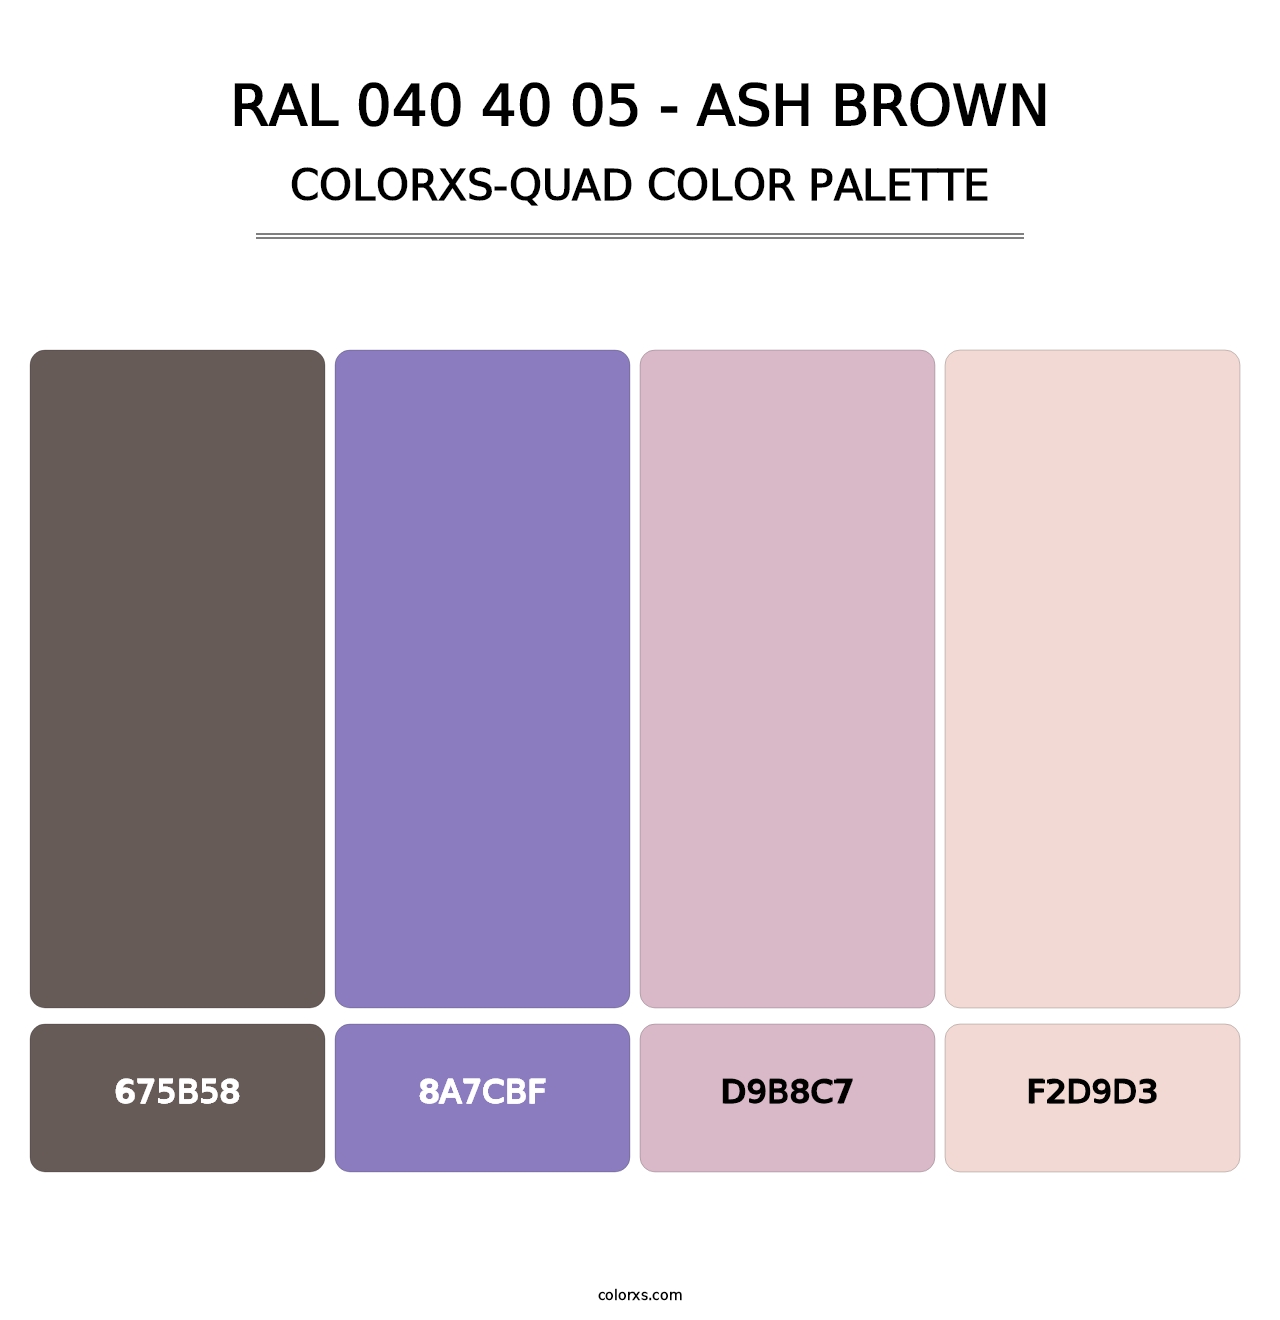 RAL 040 40 05 - Ash Brown - Colorxs Quad Palette